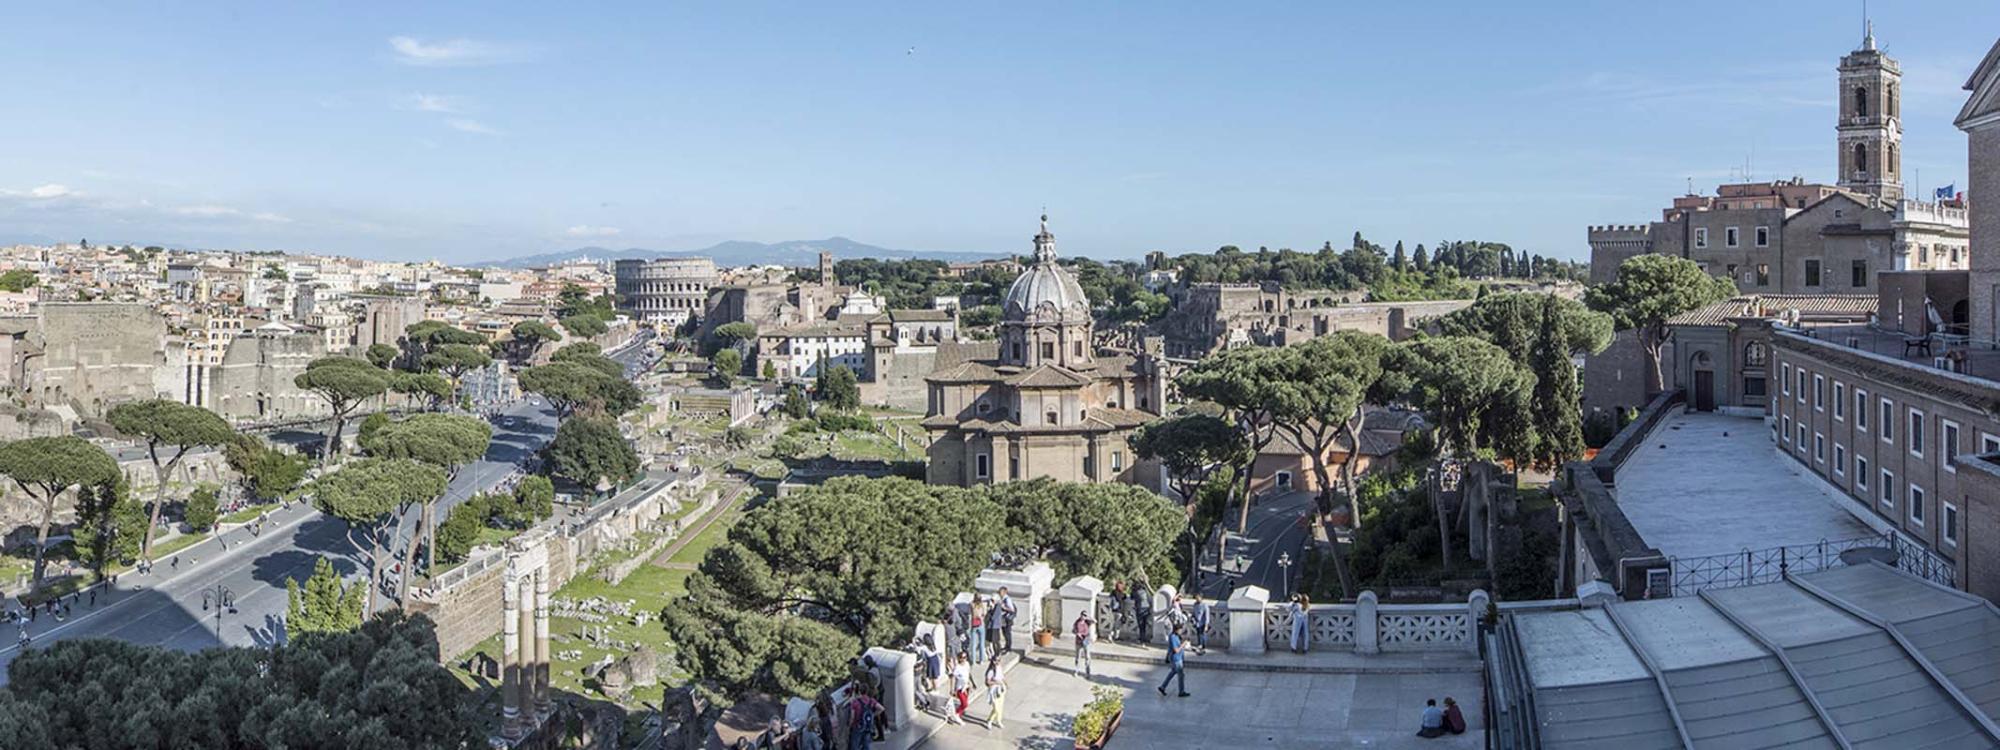 Vista panoramica del Colosseo e dei Fori Imperiali dalla Terrazza Italia
